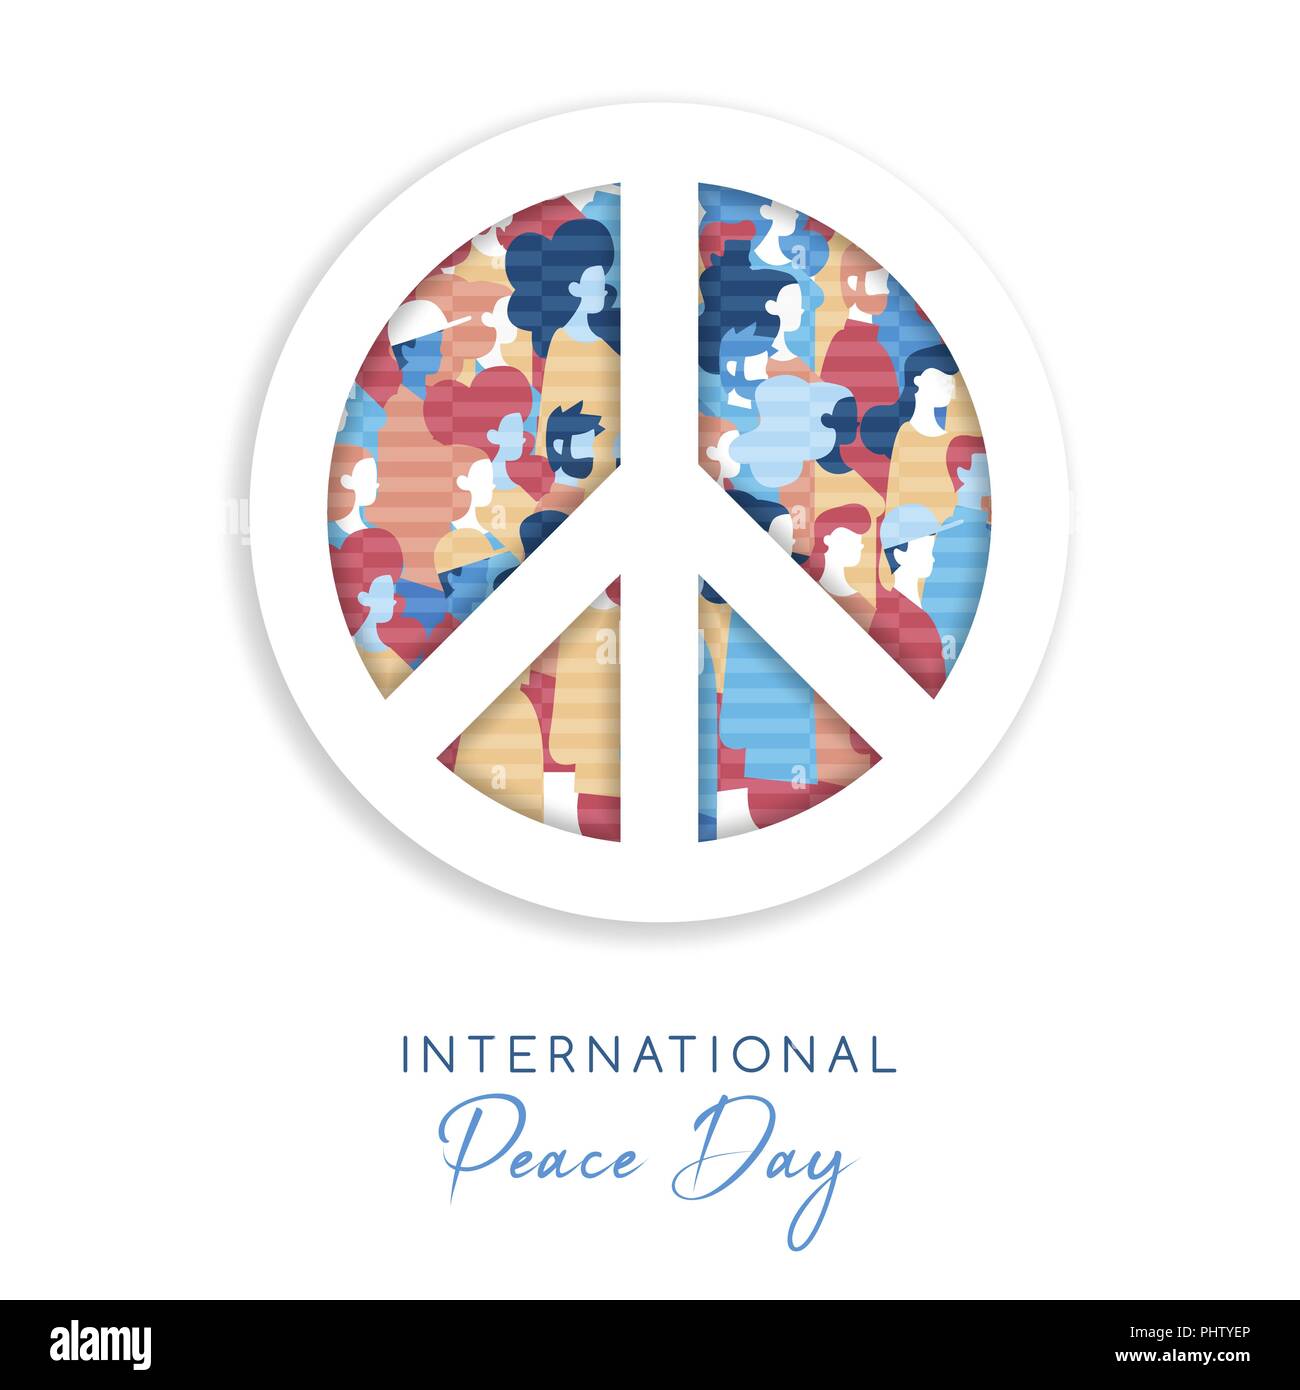 Internationaler Friedenstag Abbildung in Papier schneiden Stil für die Kultur der Einheit in der ganzen Welt. Symbol Ausschnitt mit verschiedensten Menschen Menschenmenge. EPS 10 Vektor. Stock Vektor